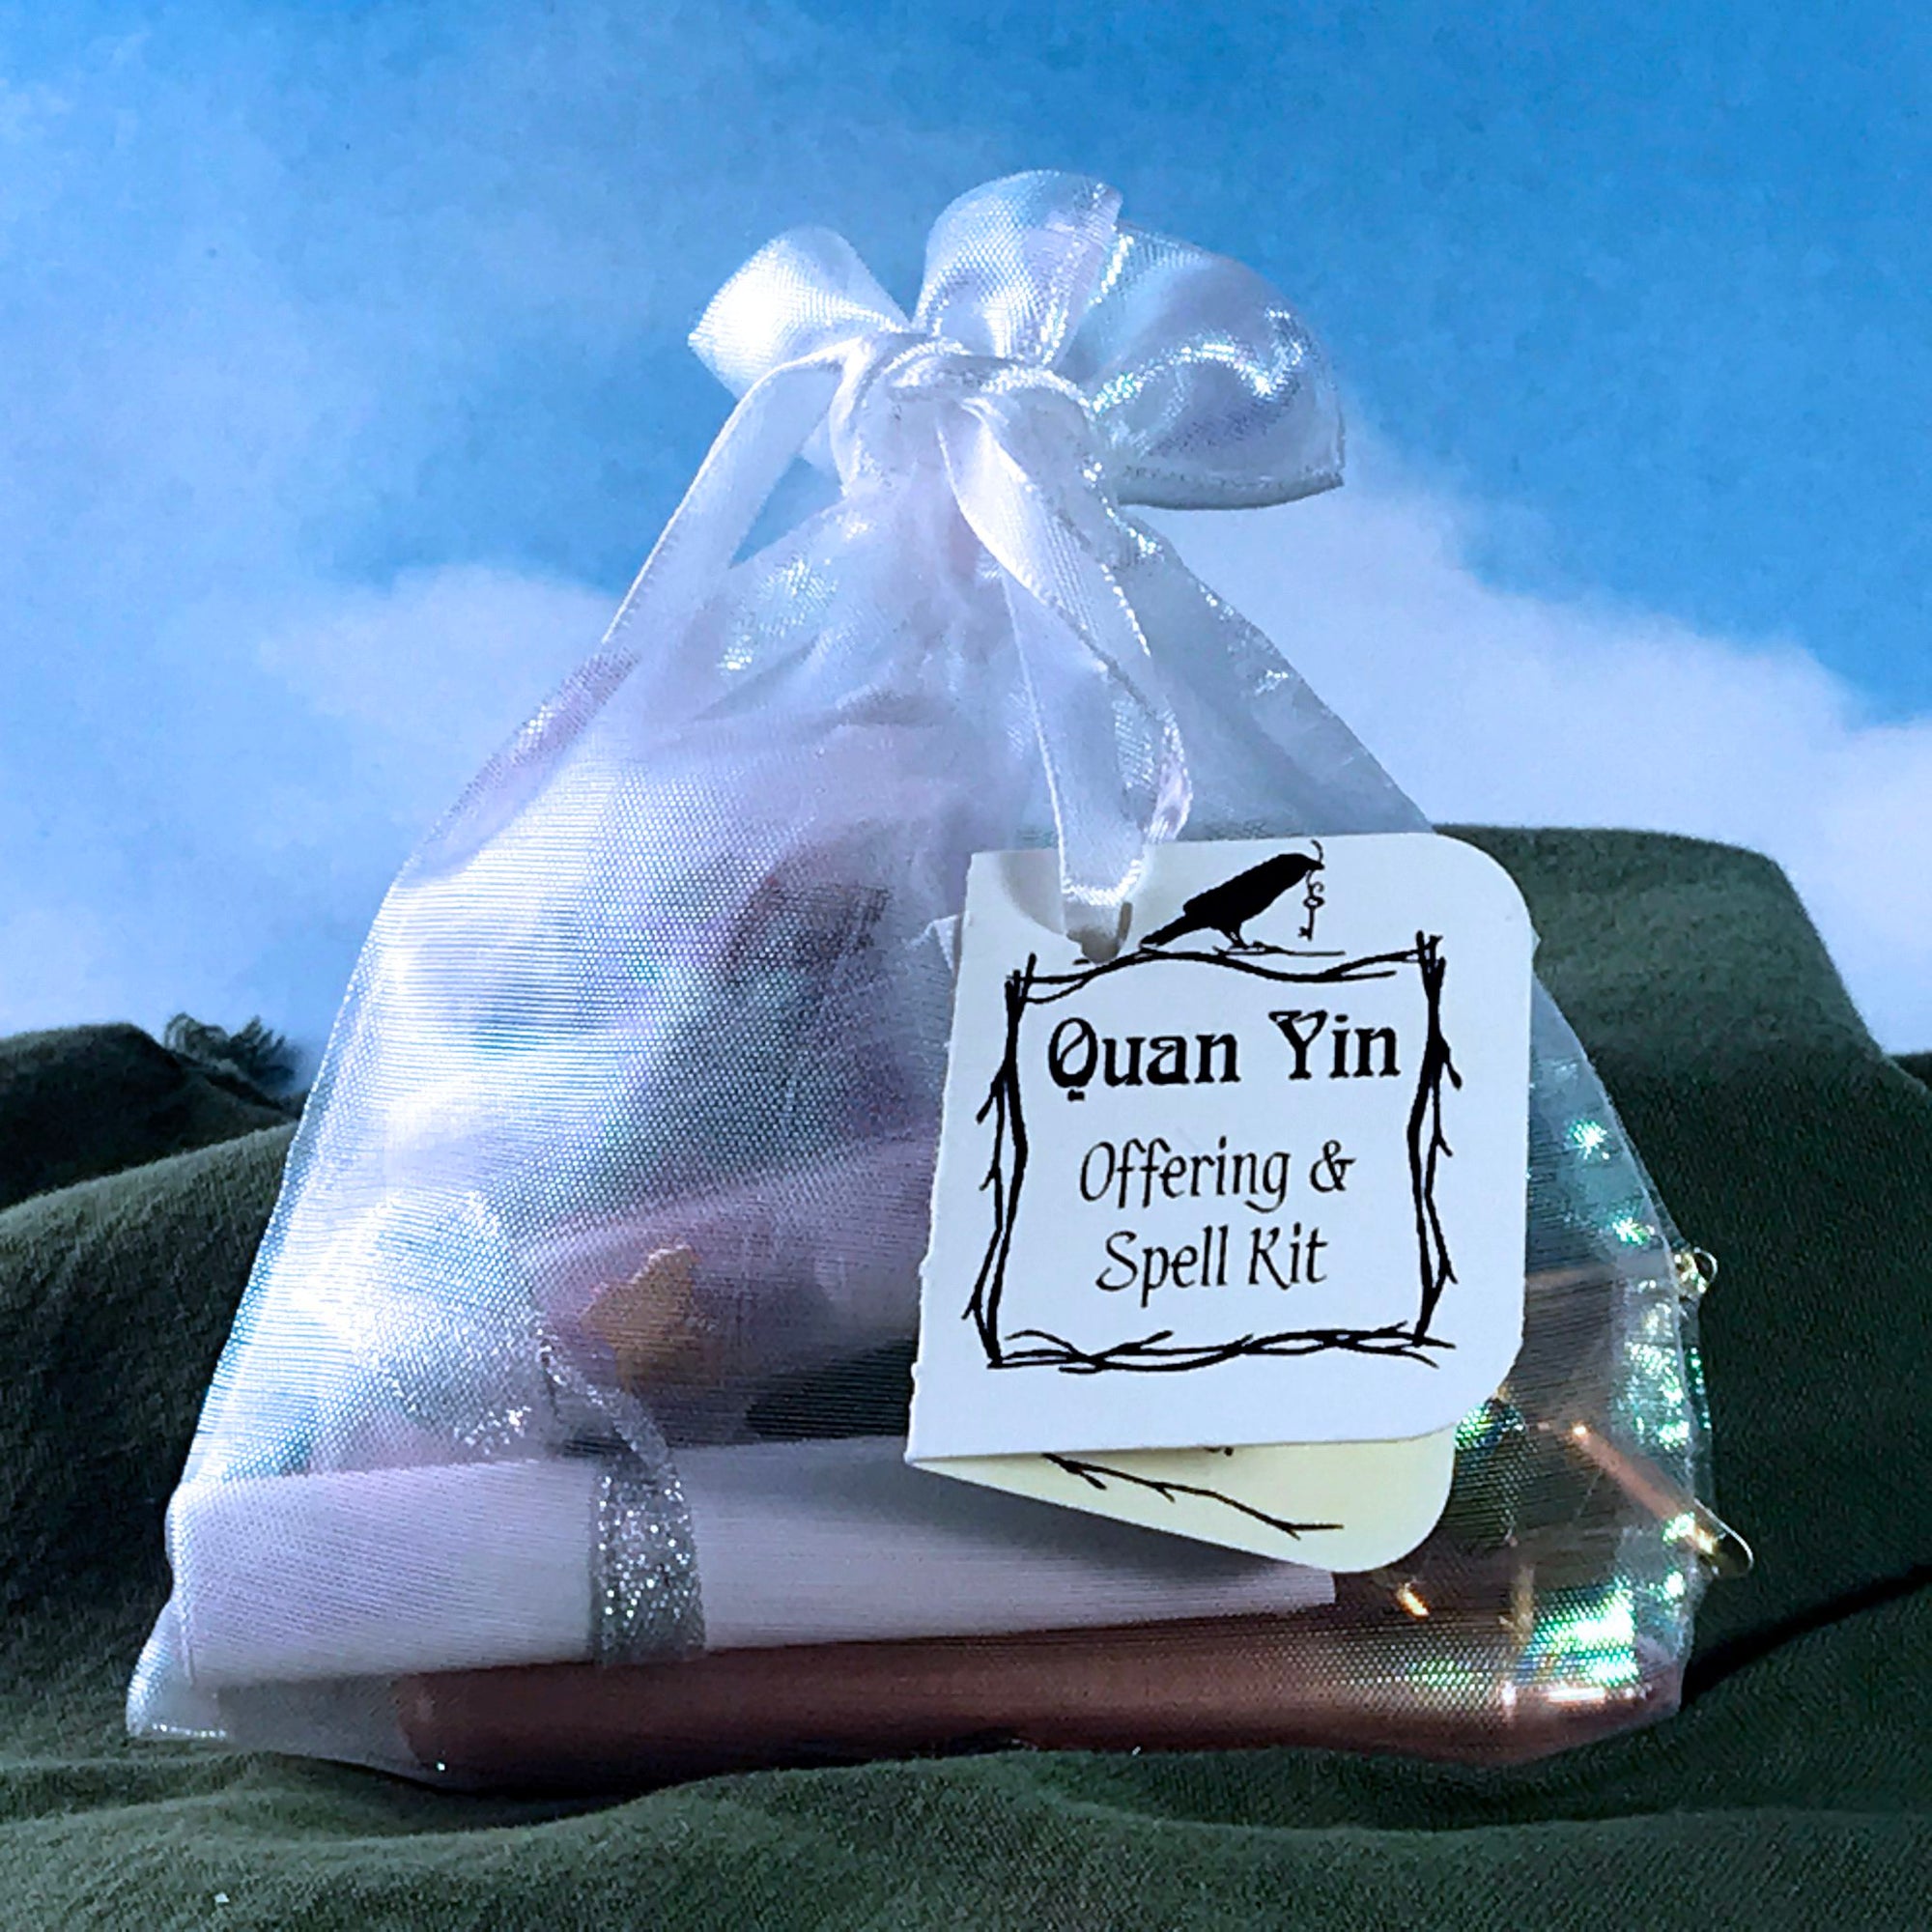 Quan Yin Offering & Spell Kit